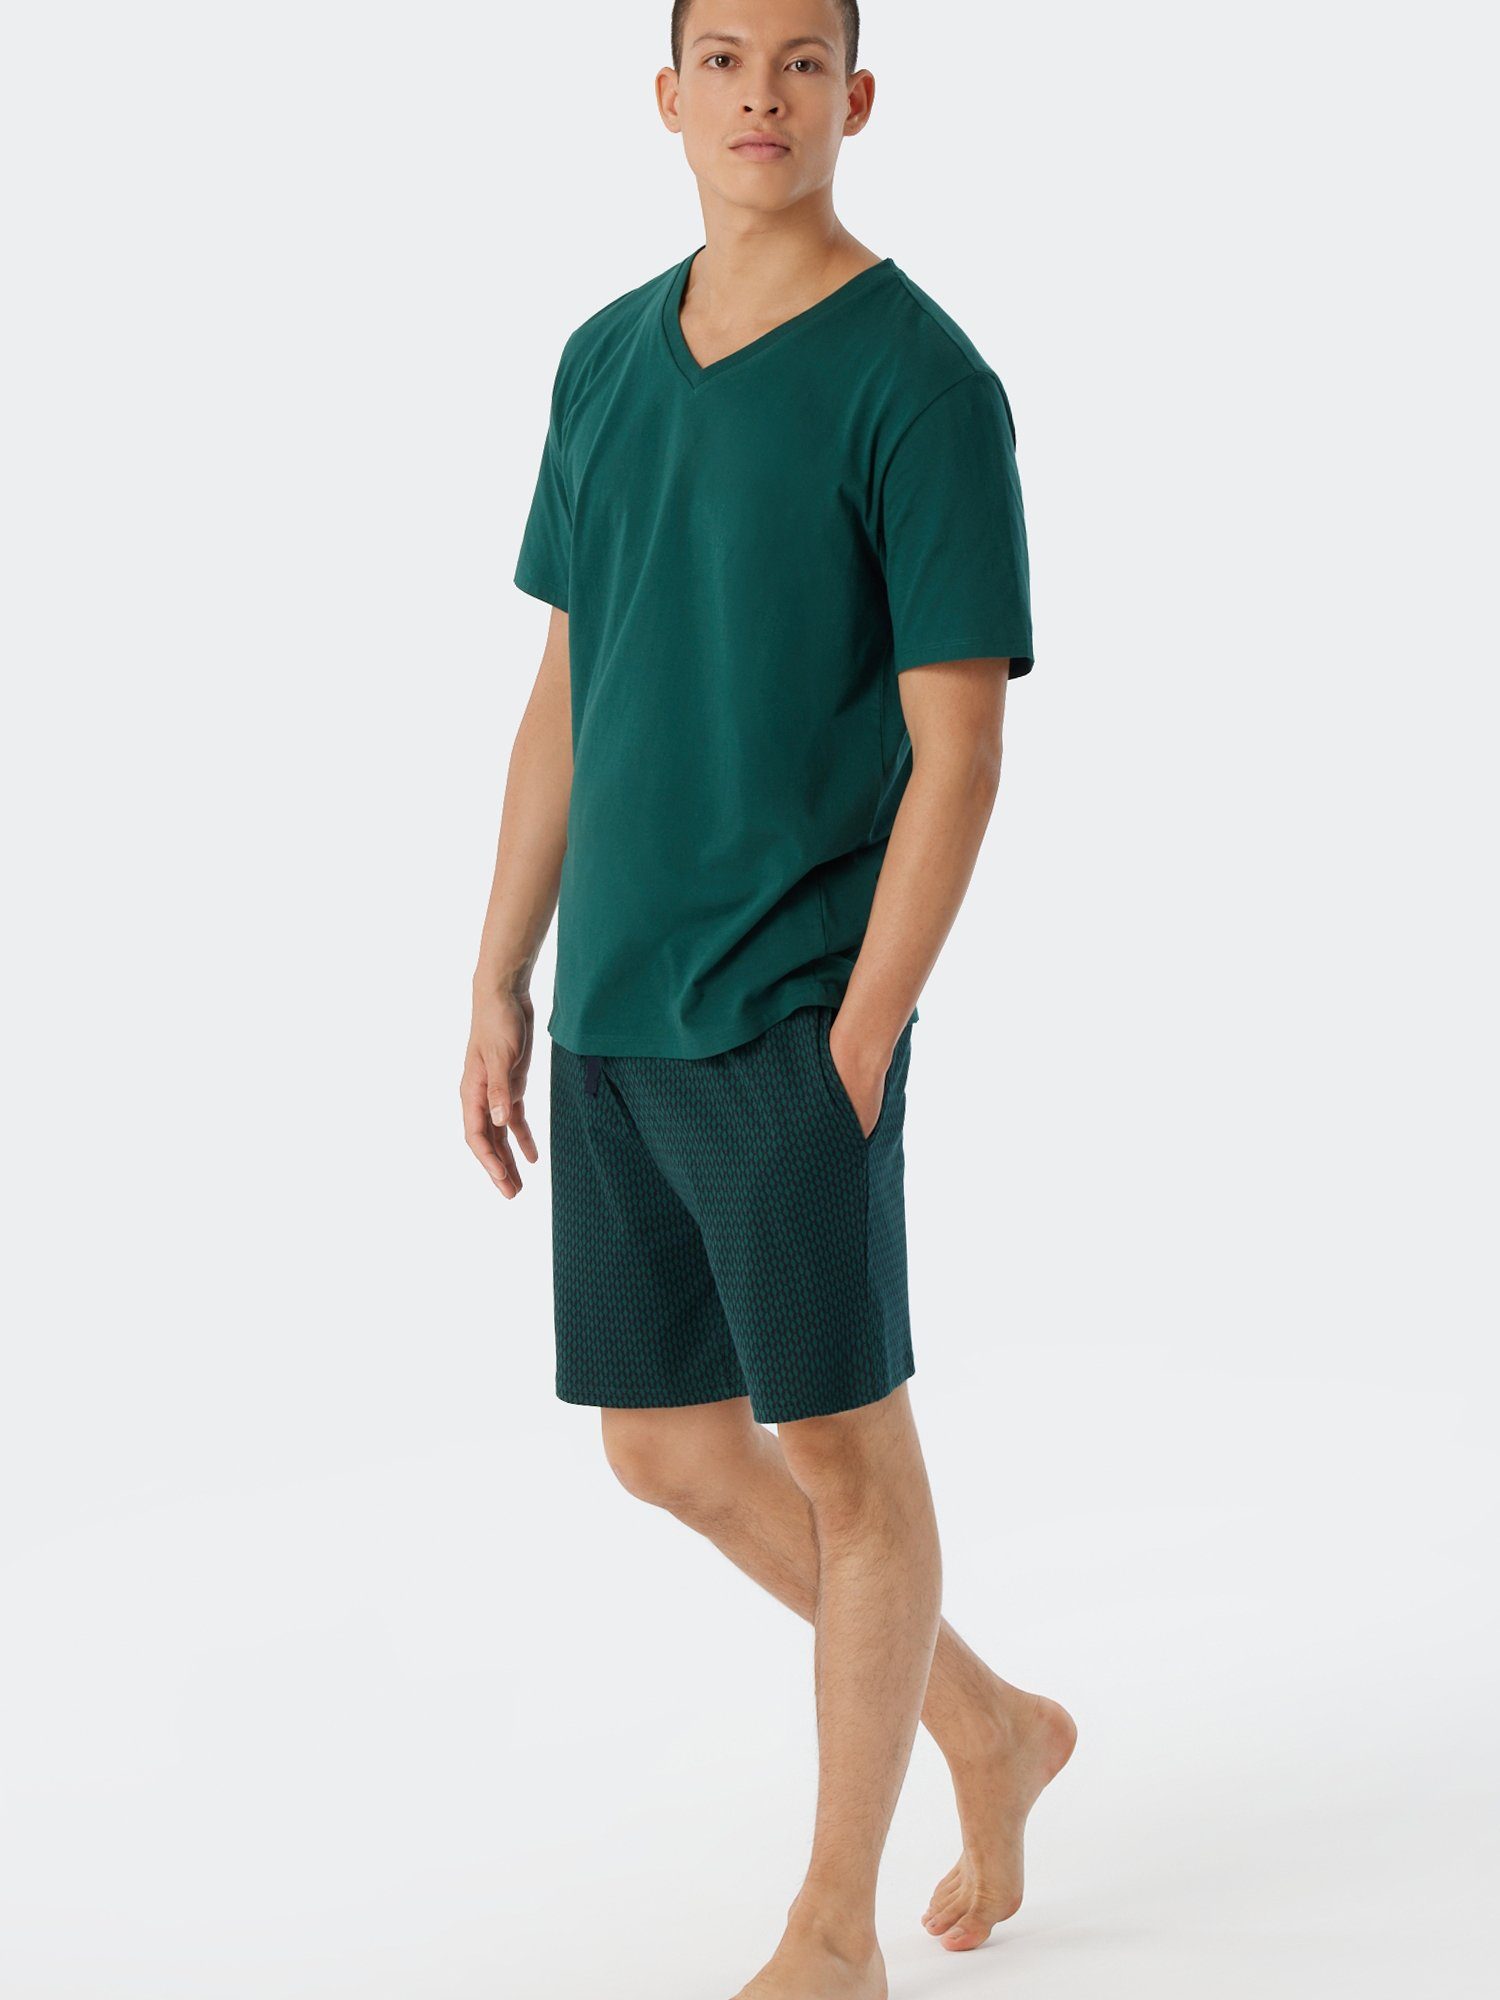 Schiesser Relax Mix dunkelgrün & V-Shirt